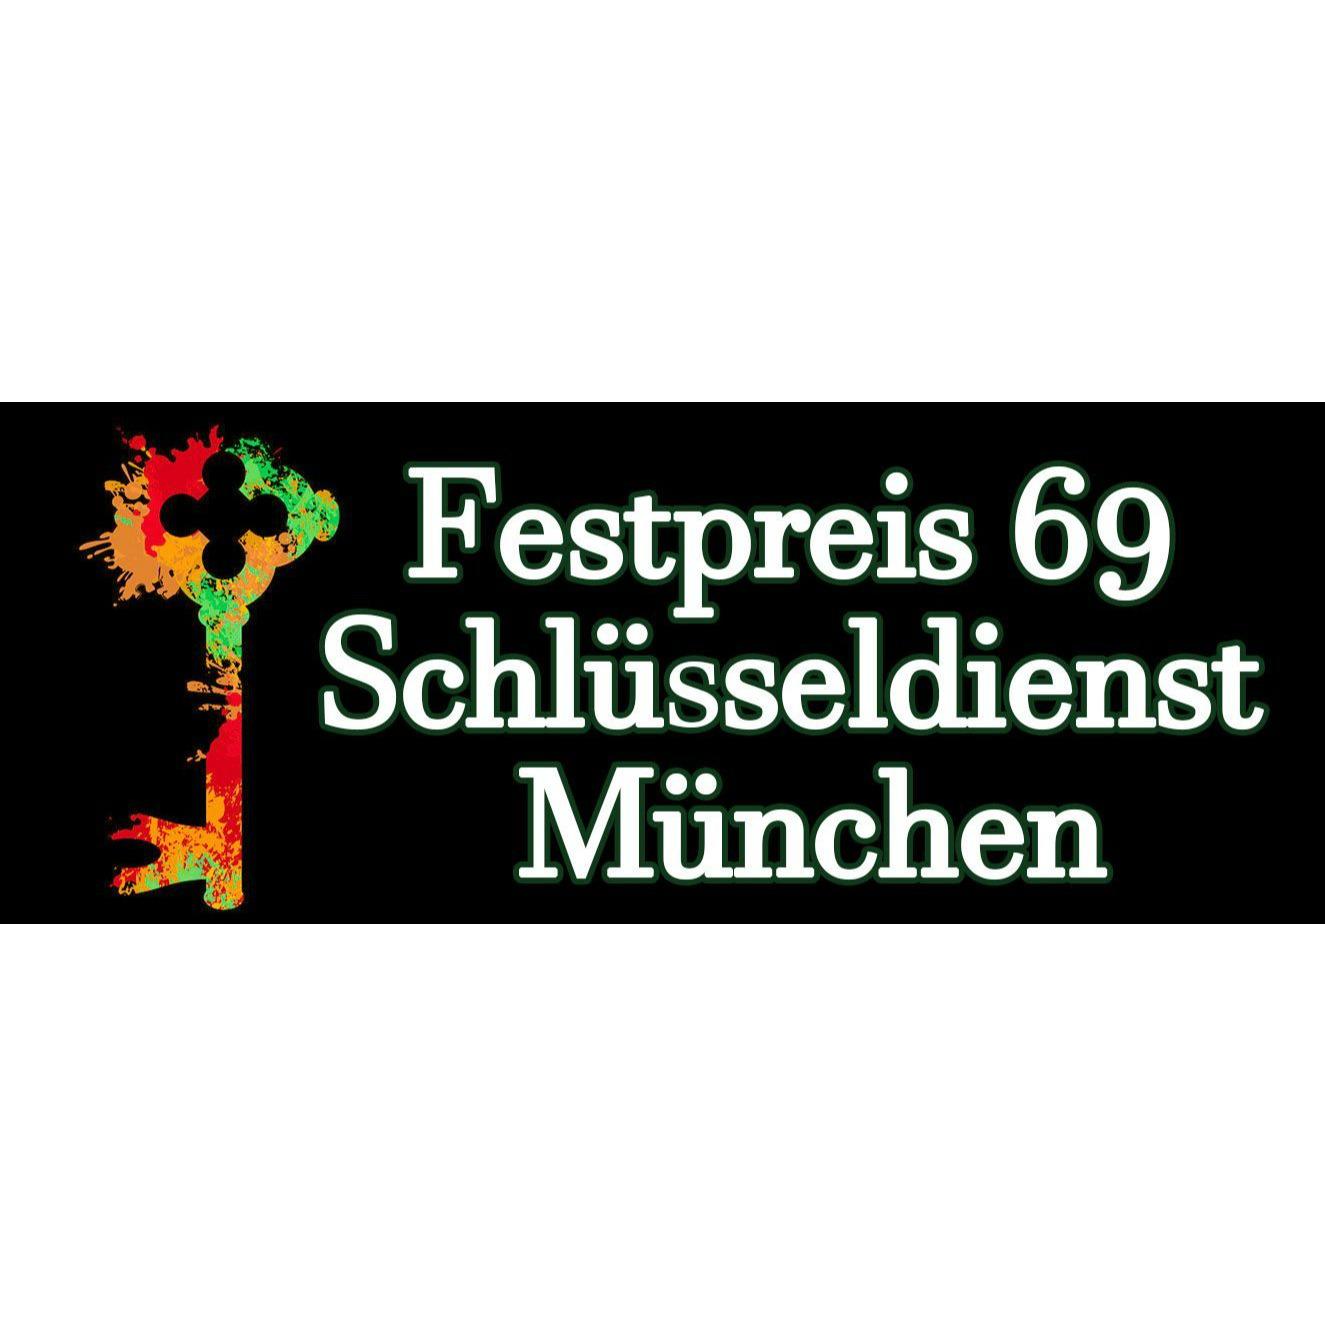 Festpreis 69 - Schlüsseldienst in München in München - Logo